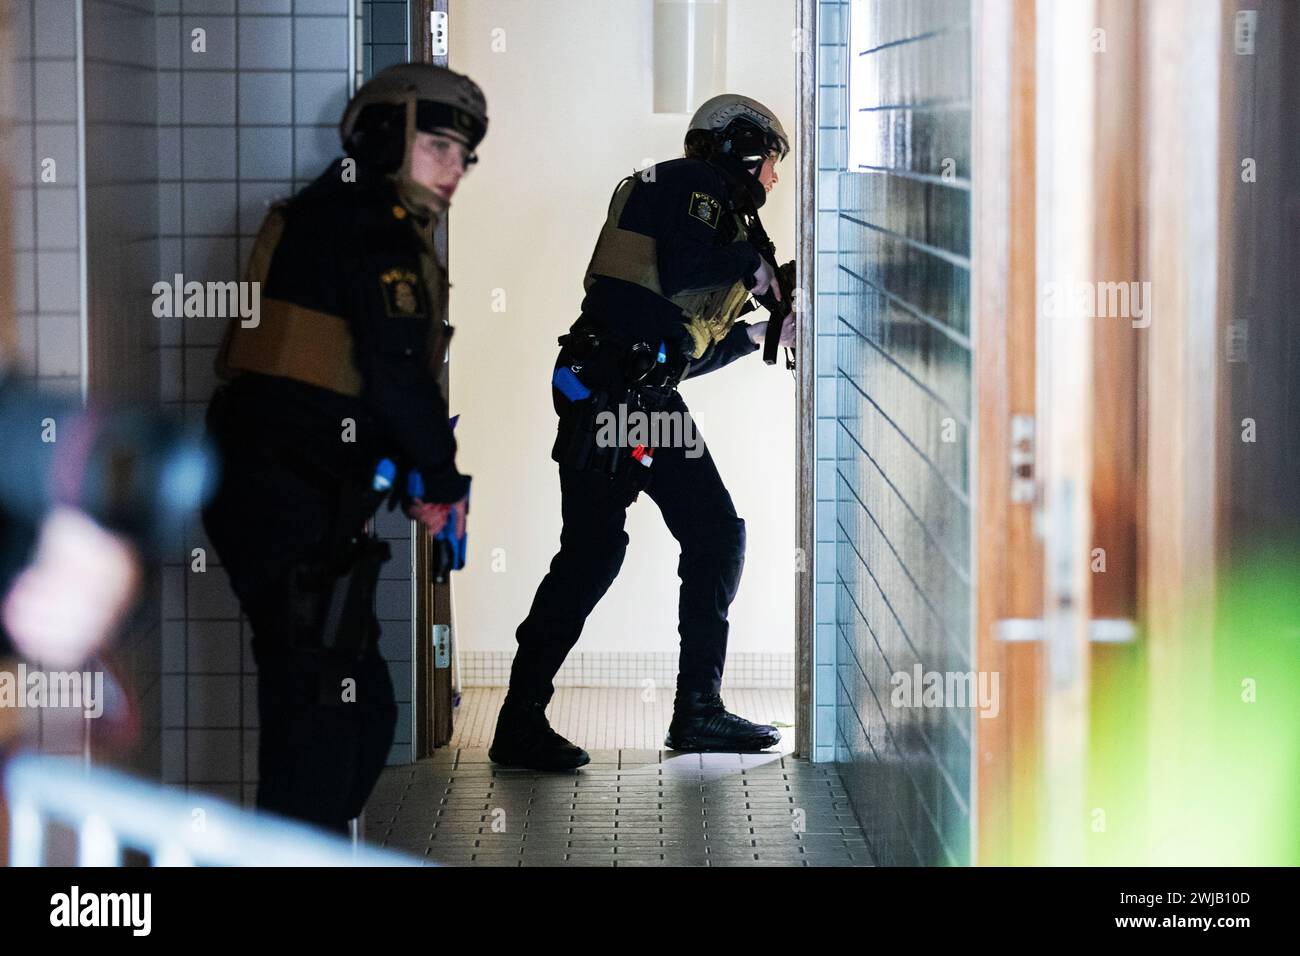 Mardi, la police et les services d'urgence se sont entraînés sur la «violence mortelle continue» (en suédois : pågående dödligt våld, PDV) ou en anglais, Active Shooter, à Linköping, en Suède. Banque D'Images